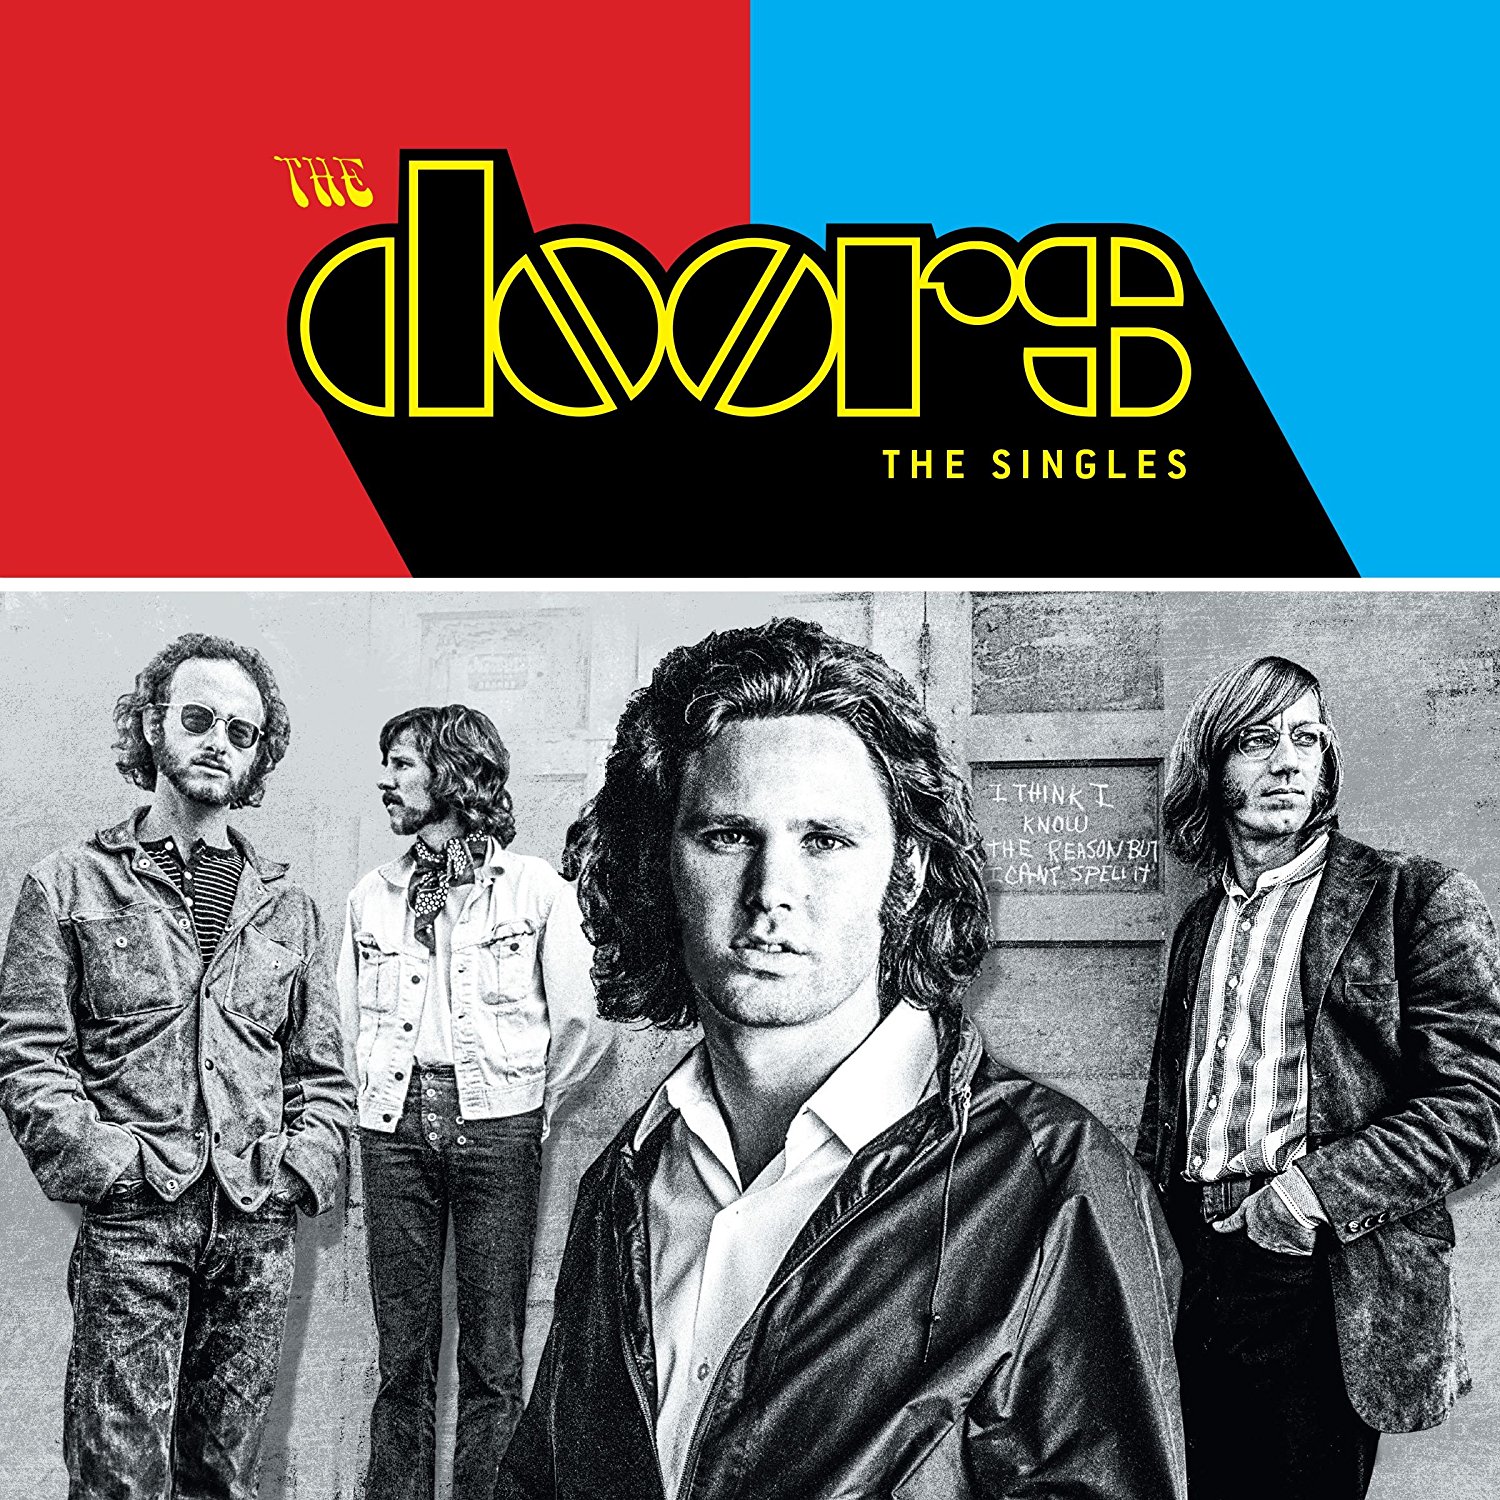 The Singles - The Doors | The Doors